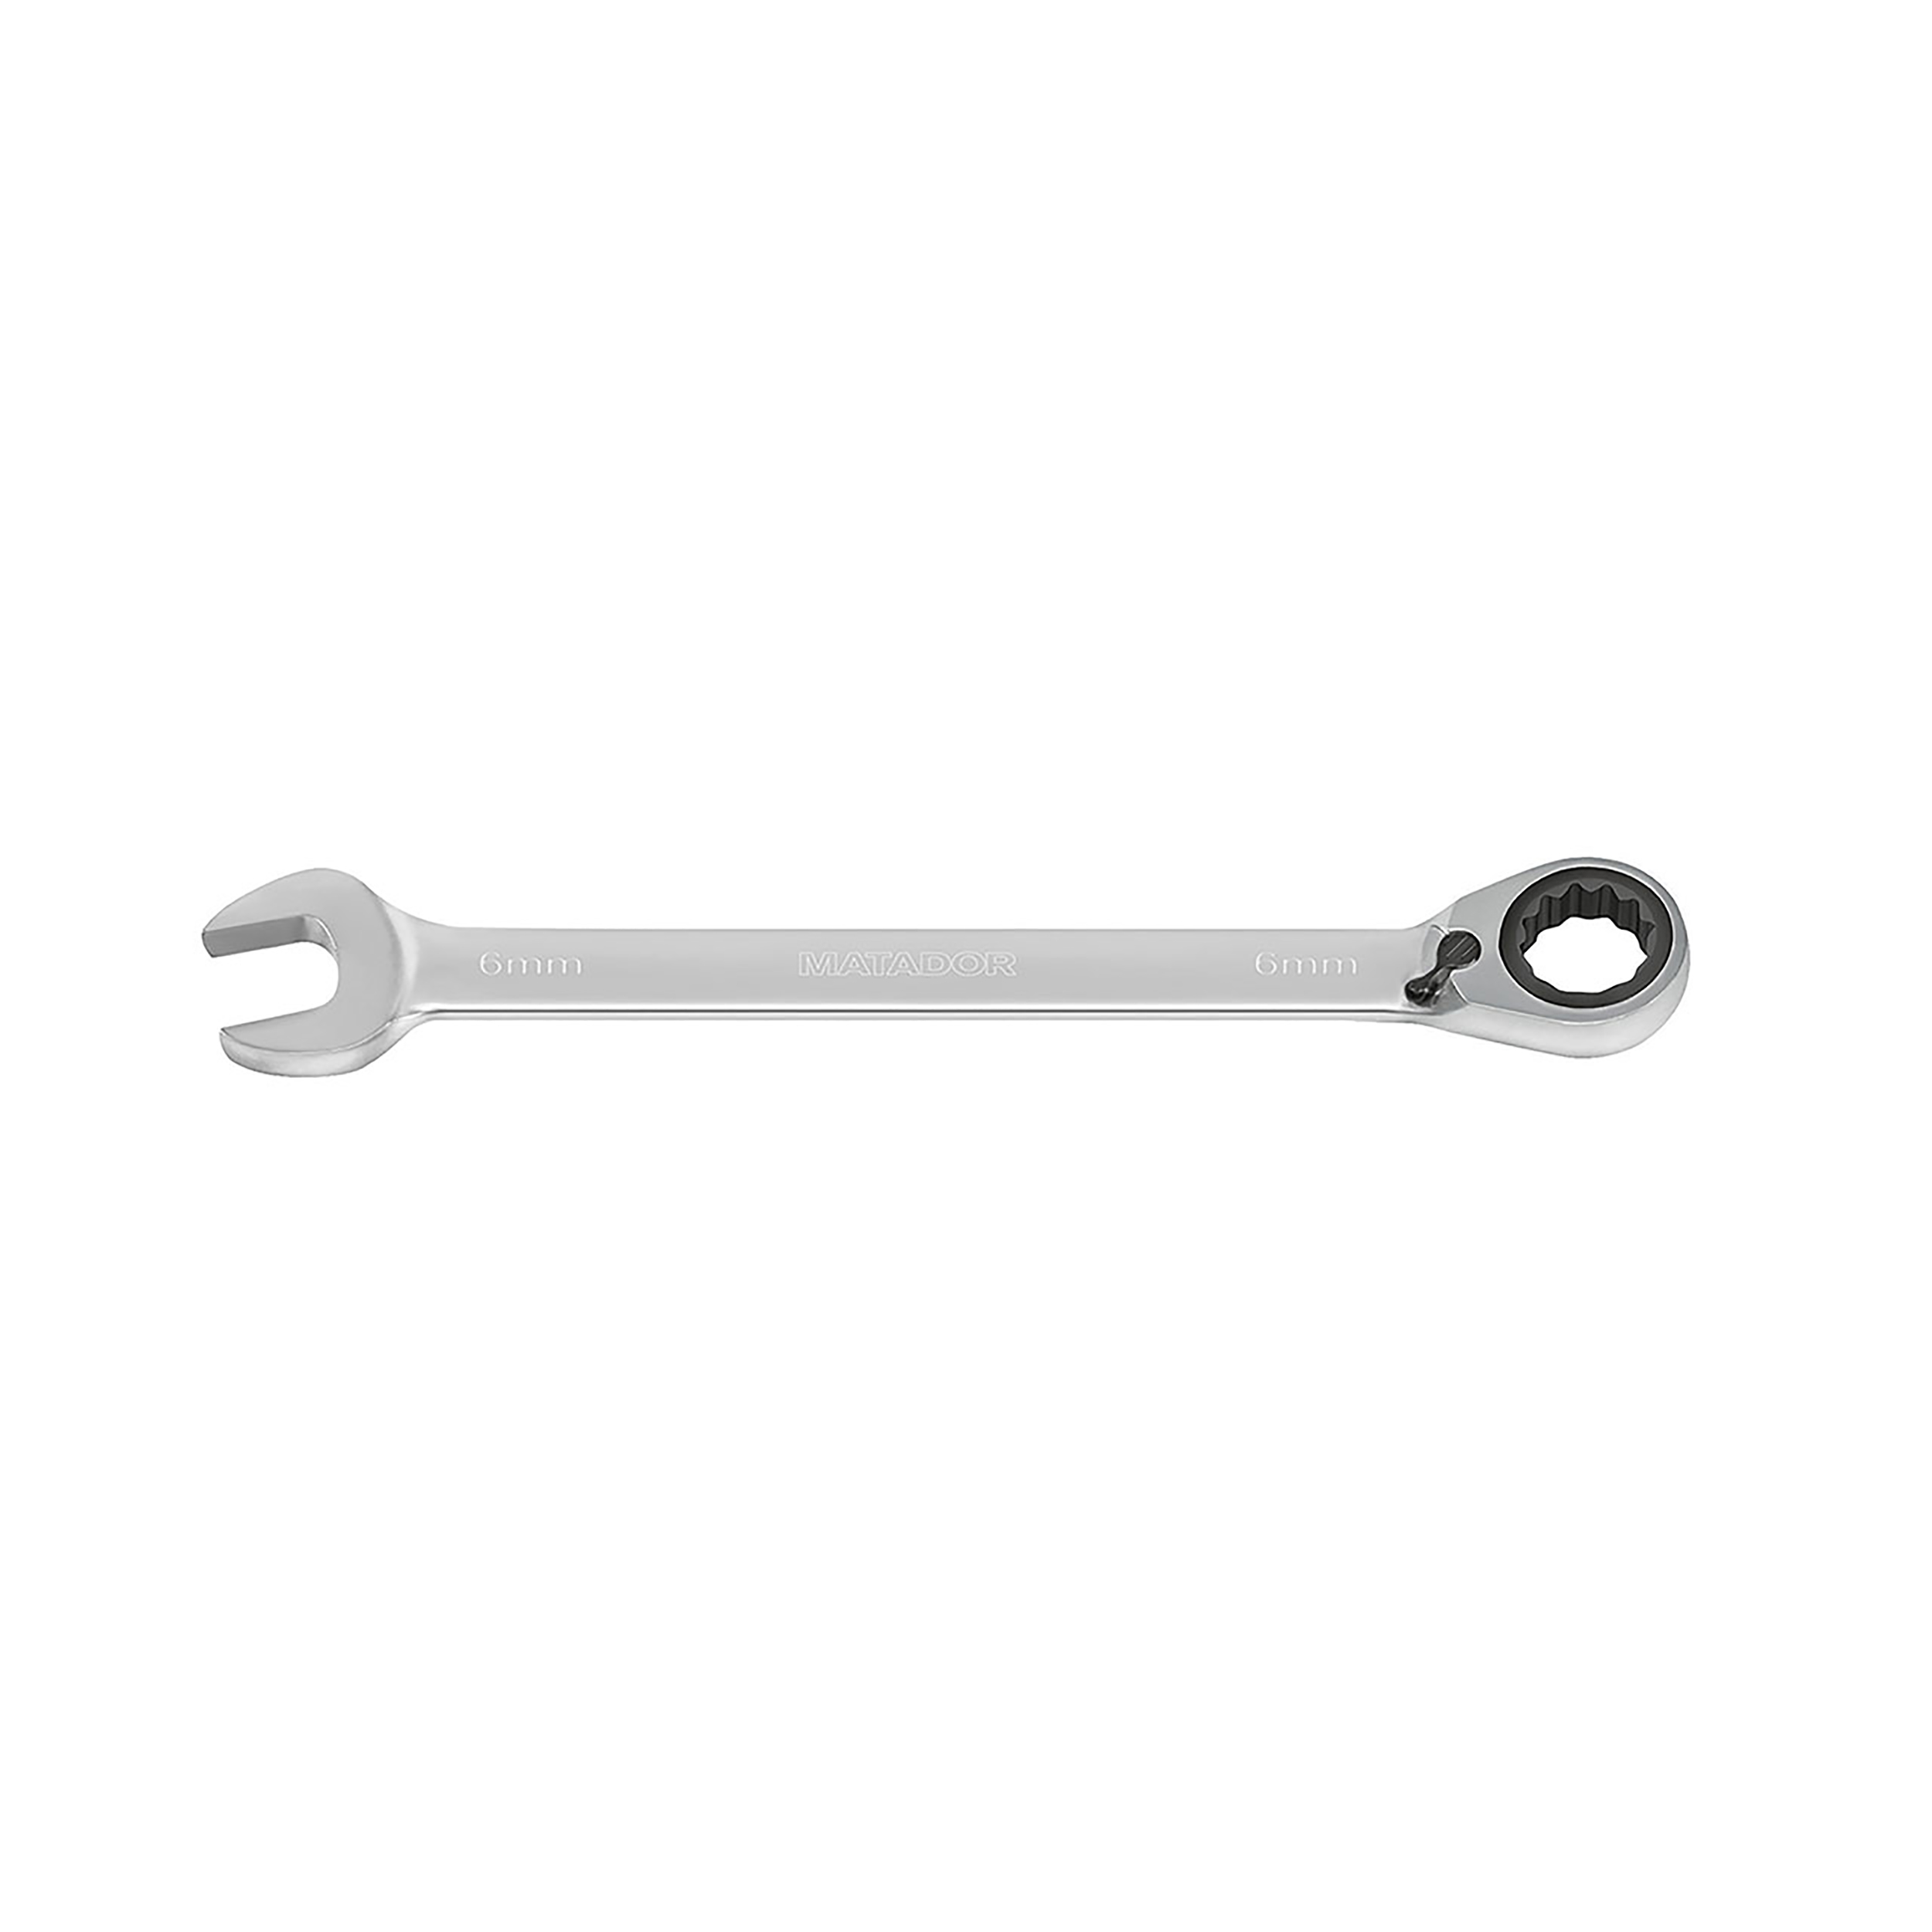 Knarren-Ringmaulschlüssel, m. Hebel, 6 mm, 24 Nm, MATADOR Art.-Code: 01890060